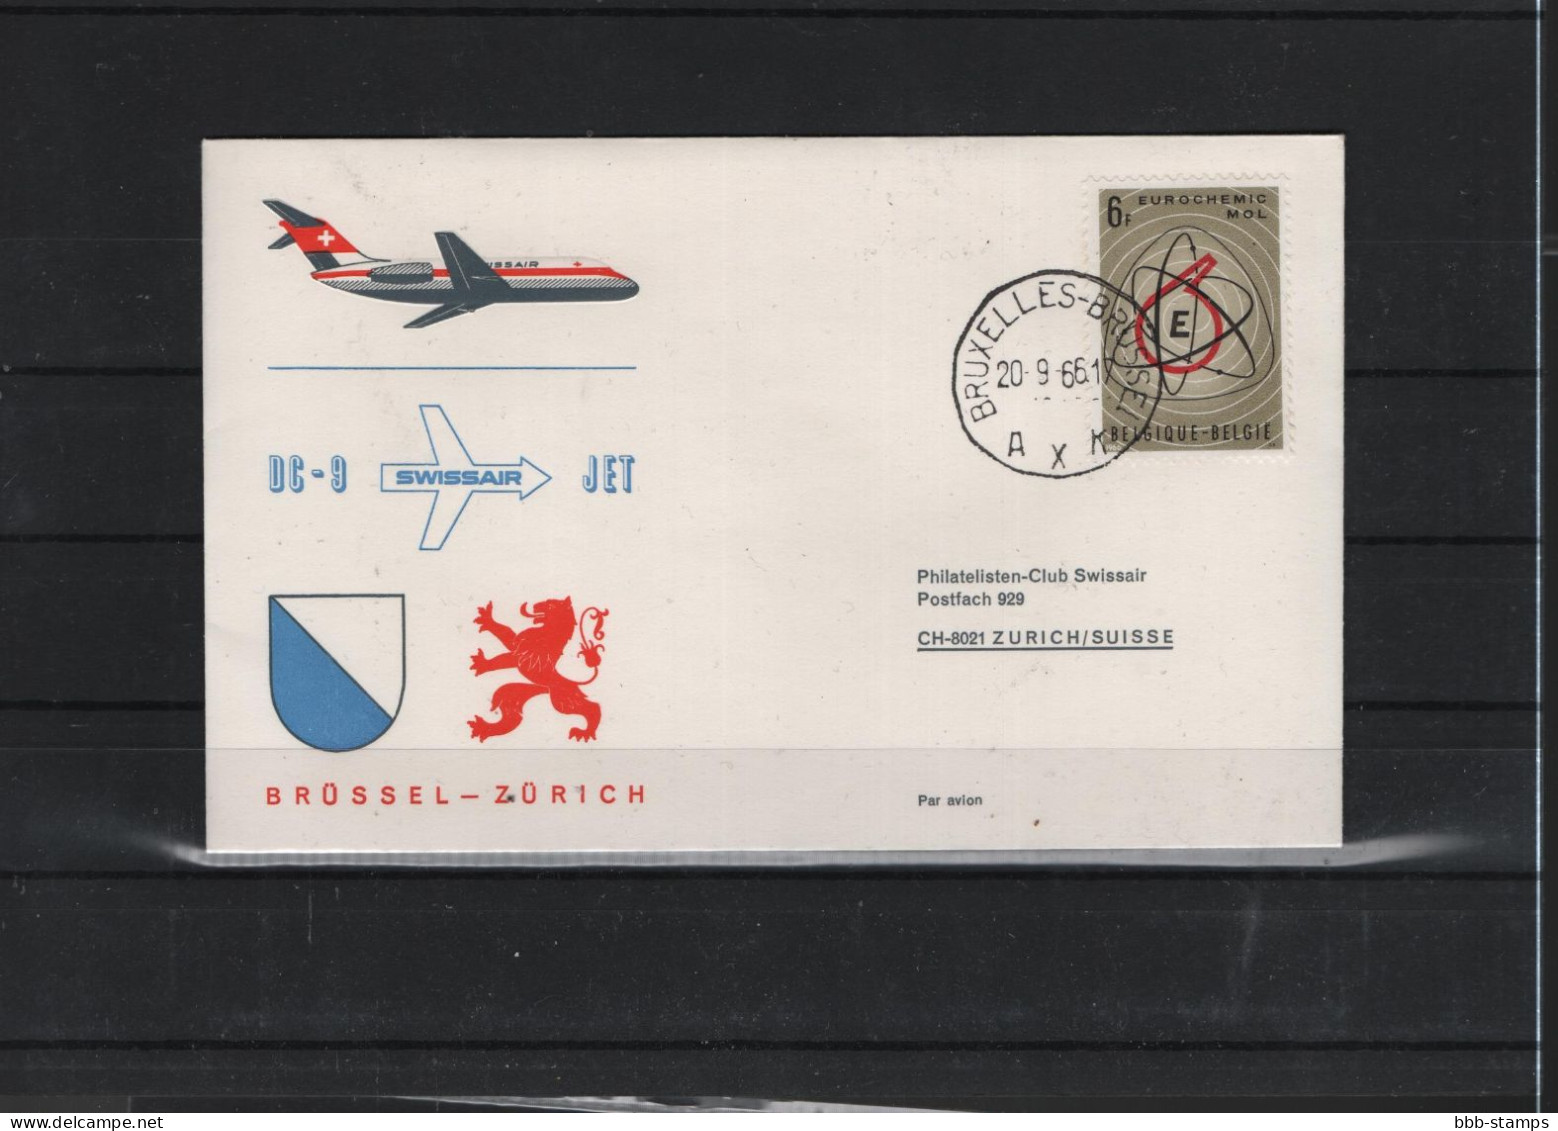 Schweiz Air Mail Swissair  FFC  20.9.2066 Zürich - Brüssel Vv - Premiers Vols